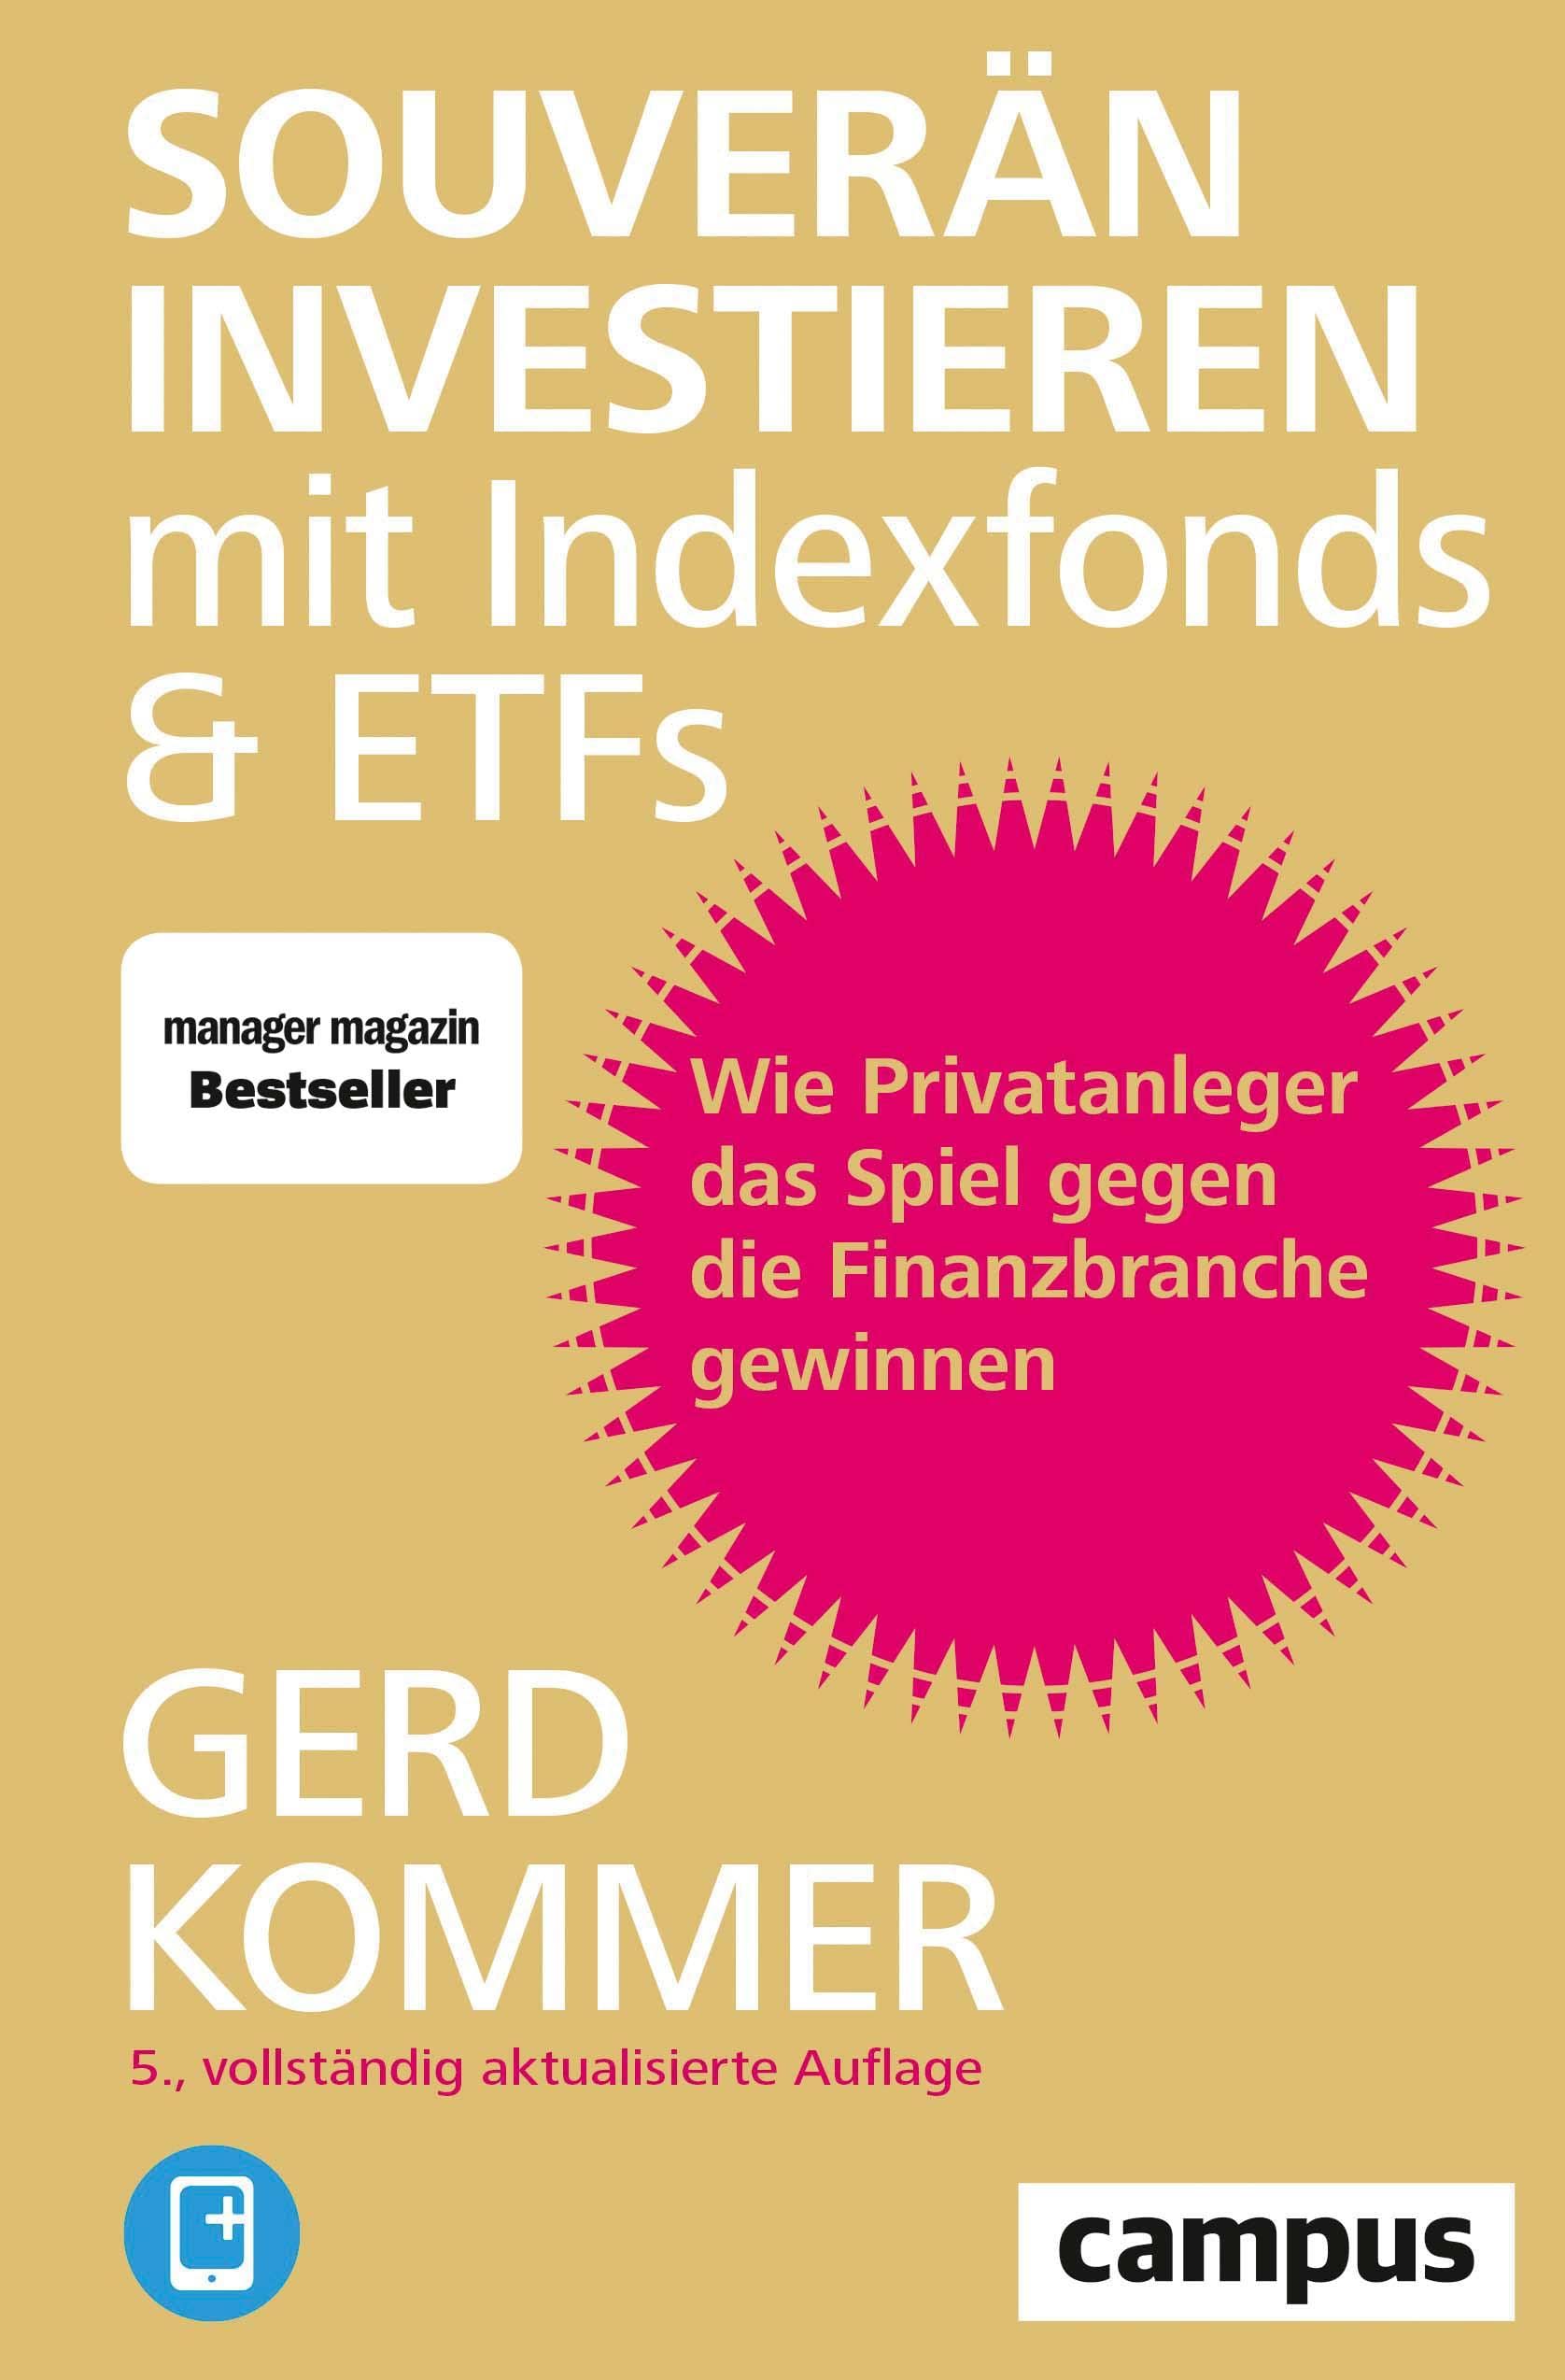 Gerd Kommer Souverän investieren ETFs